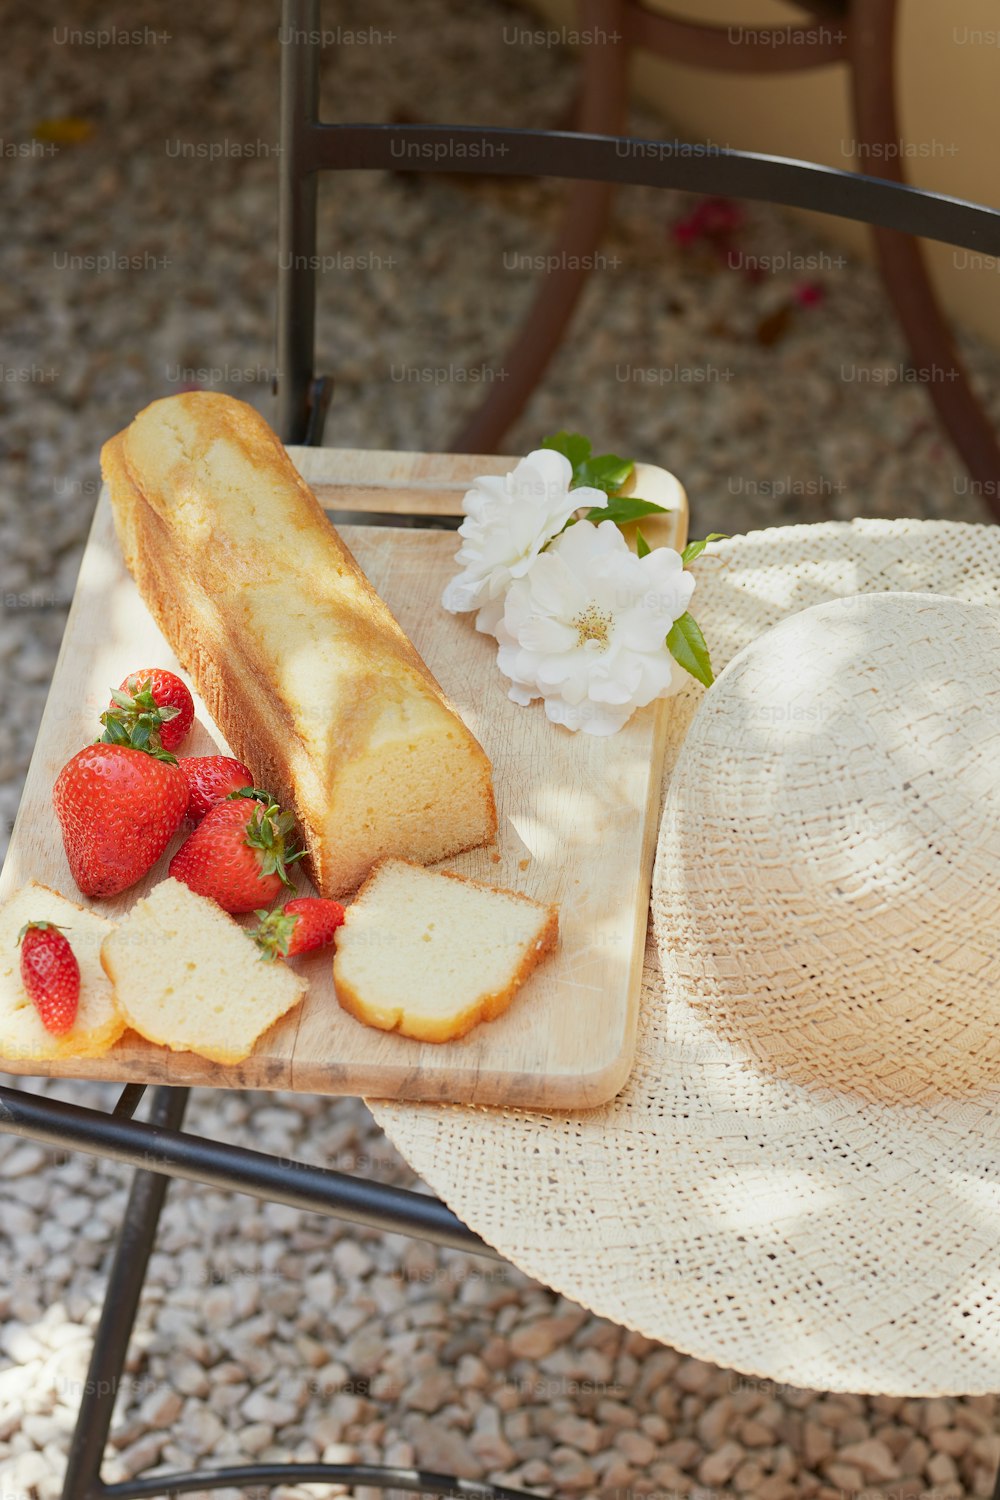 테이블 위에 빵 한 조각과 딸기 몇 개